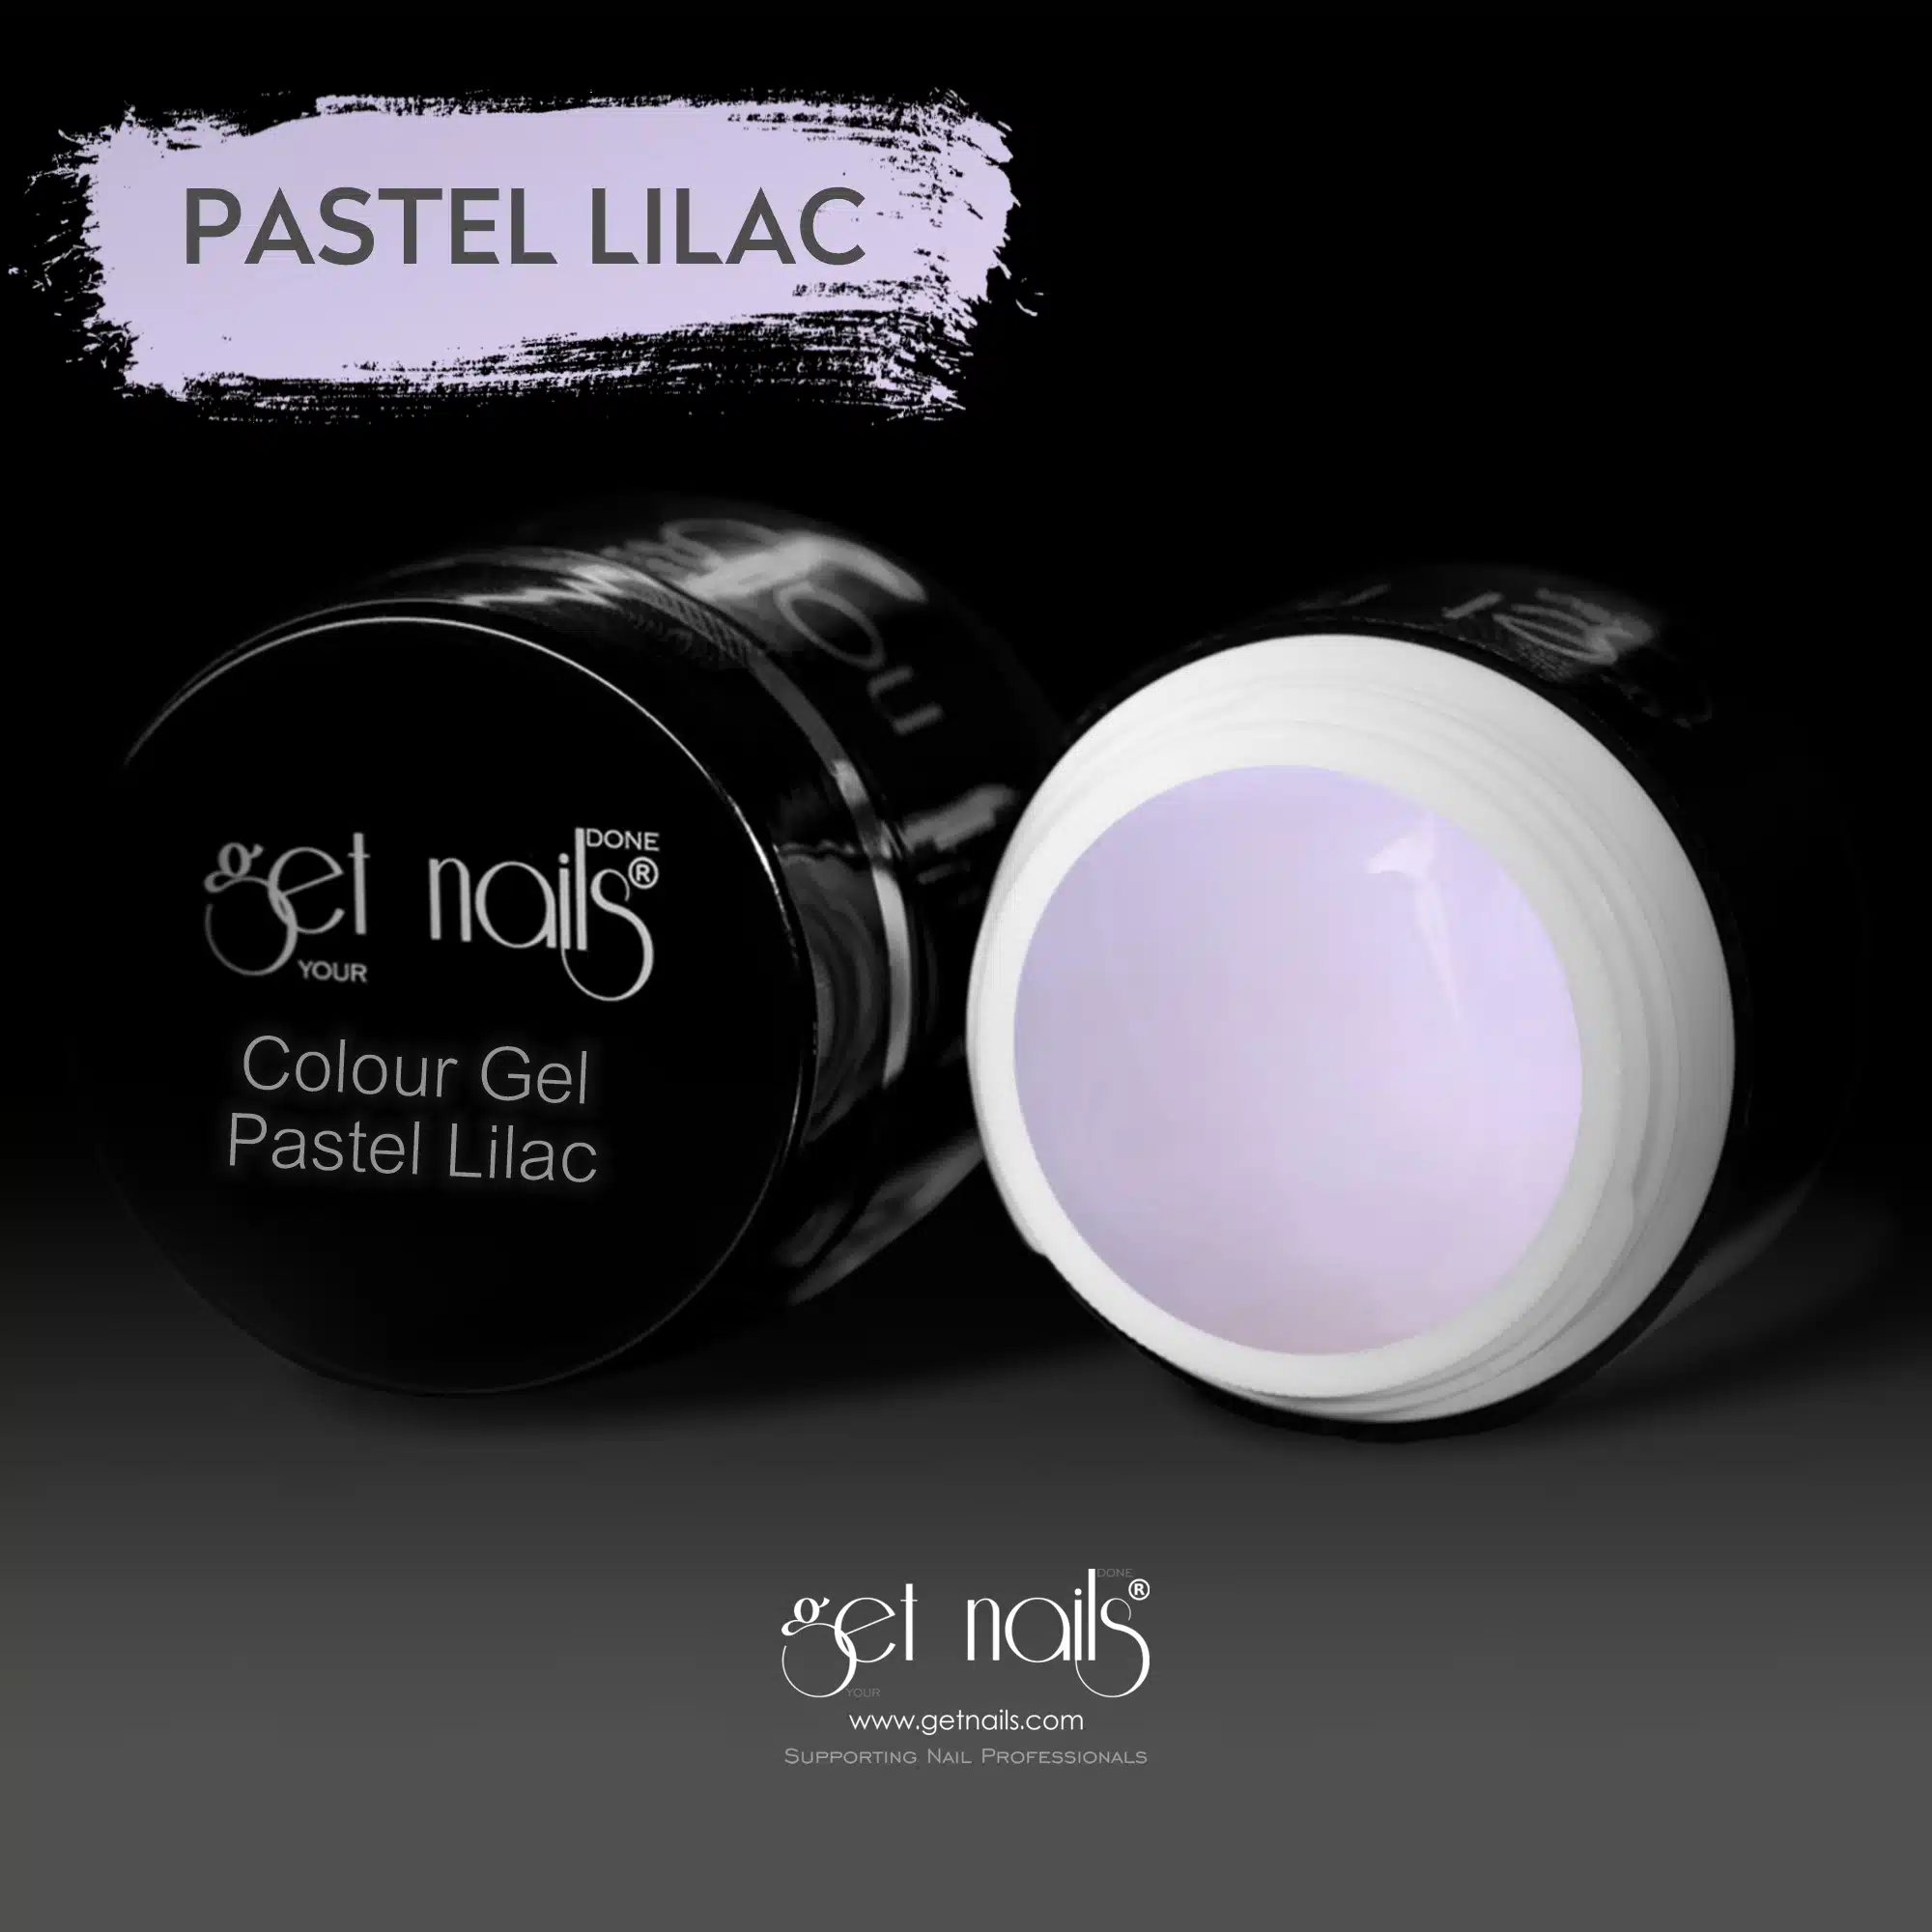 Get Nails Austria - Color Gel Pastel Lilac 5g